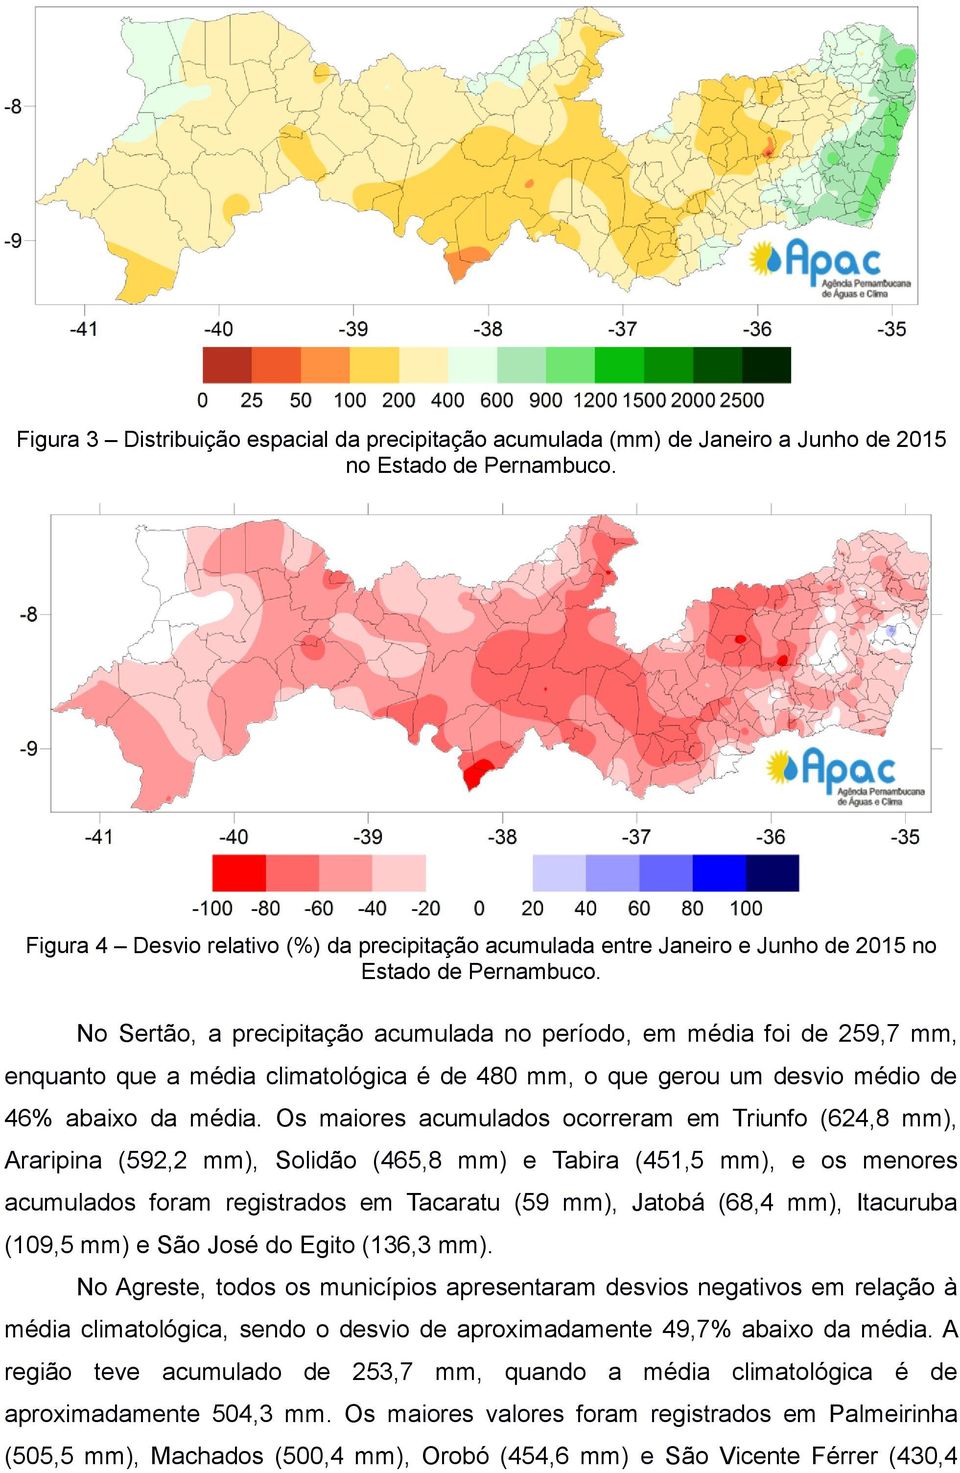 No Sertão, a precipitação acumulada no período, em média foi de 259,7 mm, enquanto que a média climatológica é de 480 mm, o que gerou um desvio médio de 46% abaixo da média.